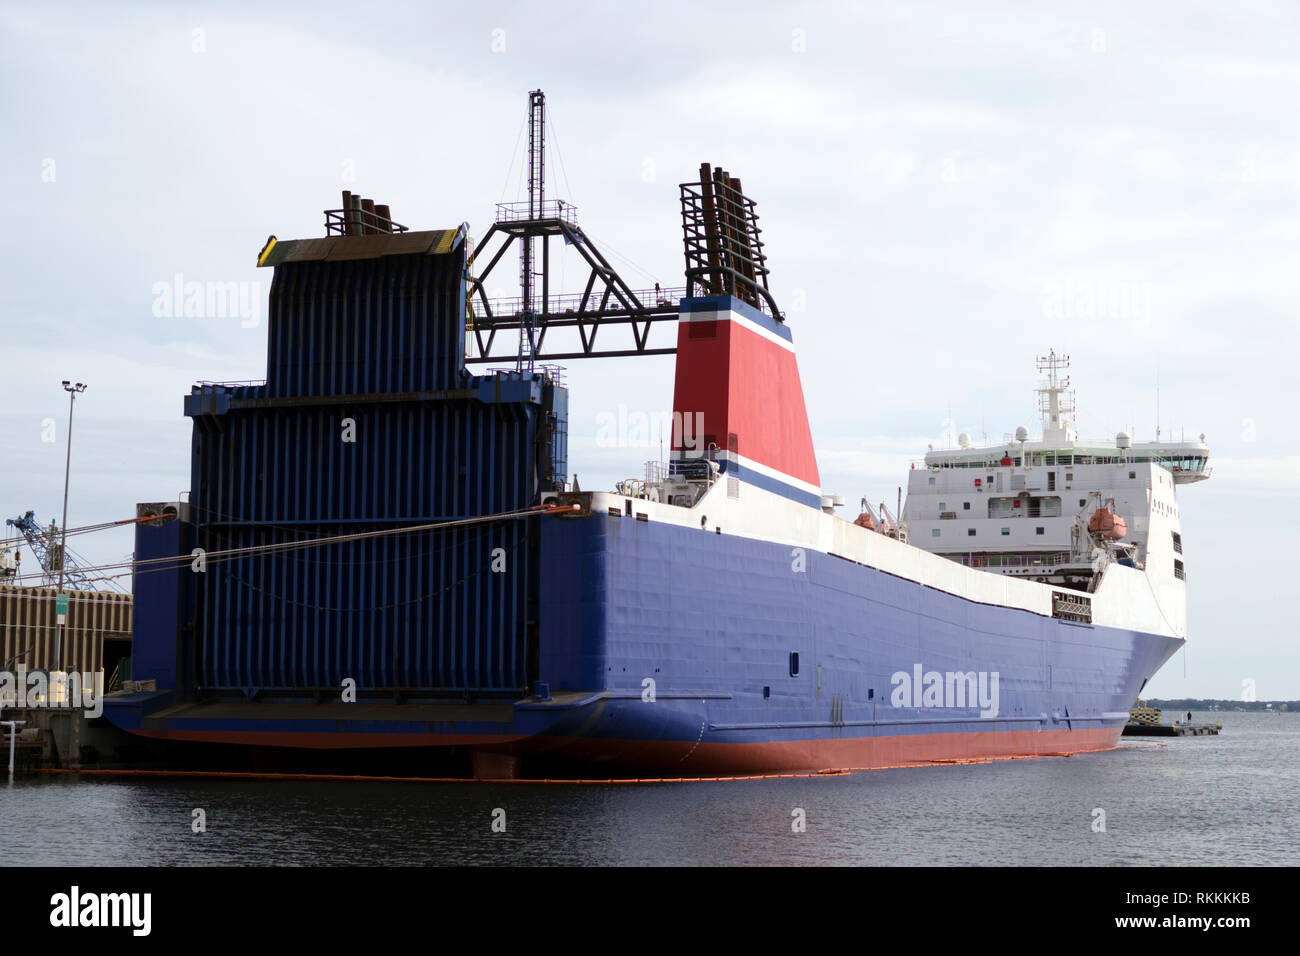 Stena Frachter, von Jeff Bezos von Amazon gekauft, angedockt am Hafen von Pensacola zu retro wie eine Rakete Landung Schiff für Blue Horizon eingebaut werden. Stockfoto